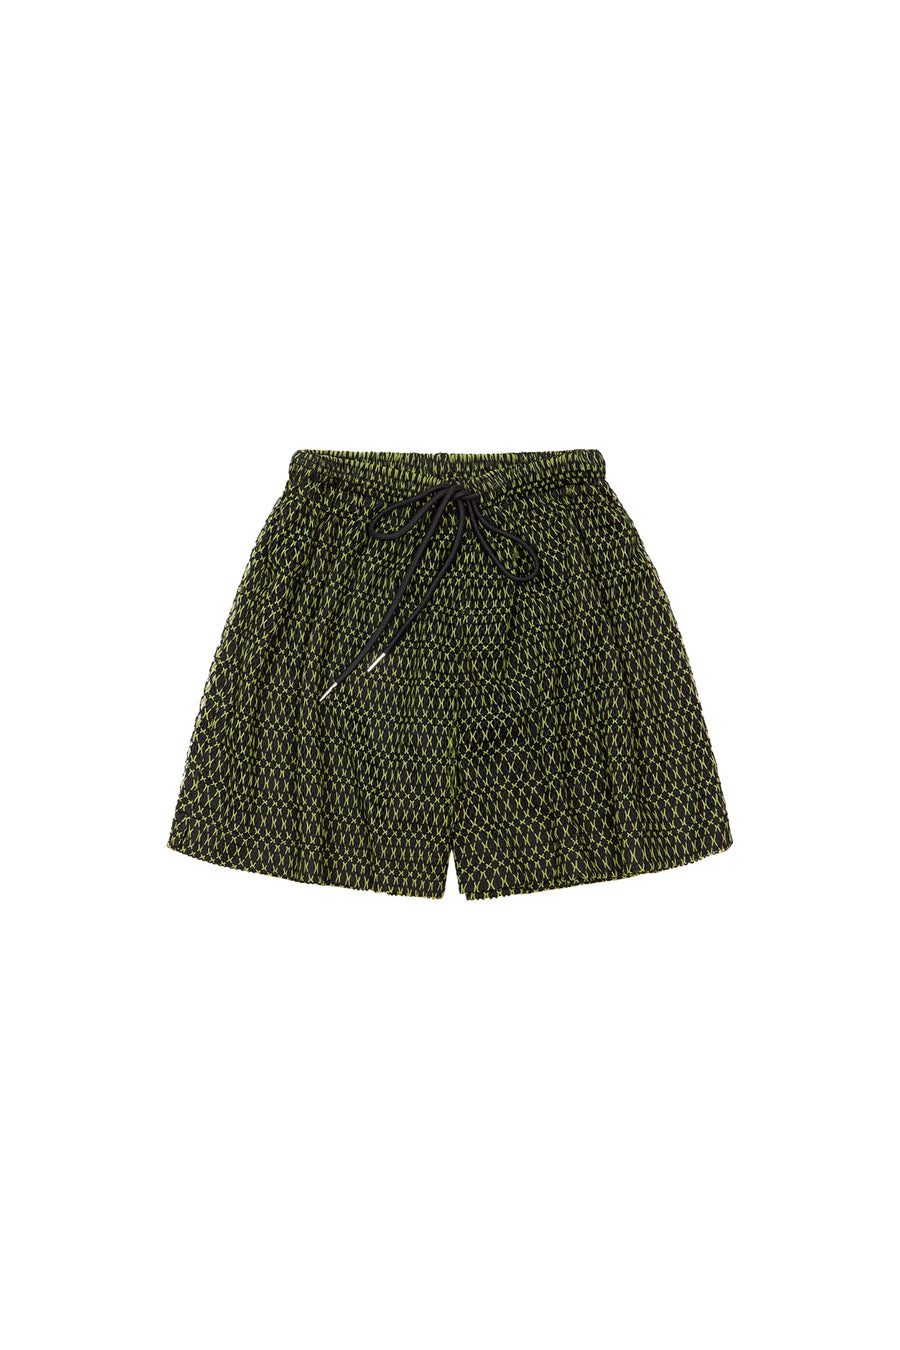 WRAY Windy Beach Shorts | Green & Black